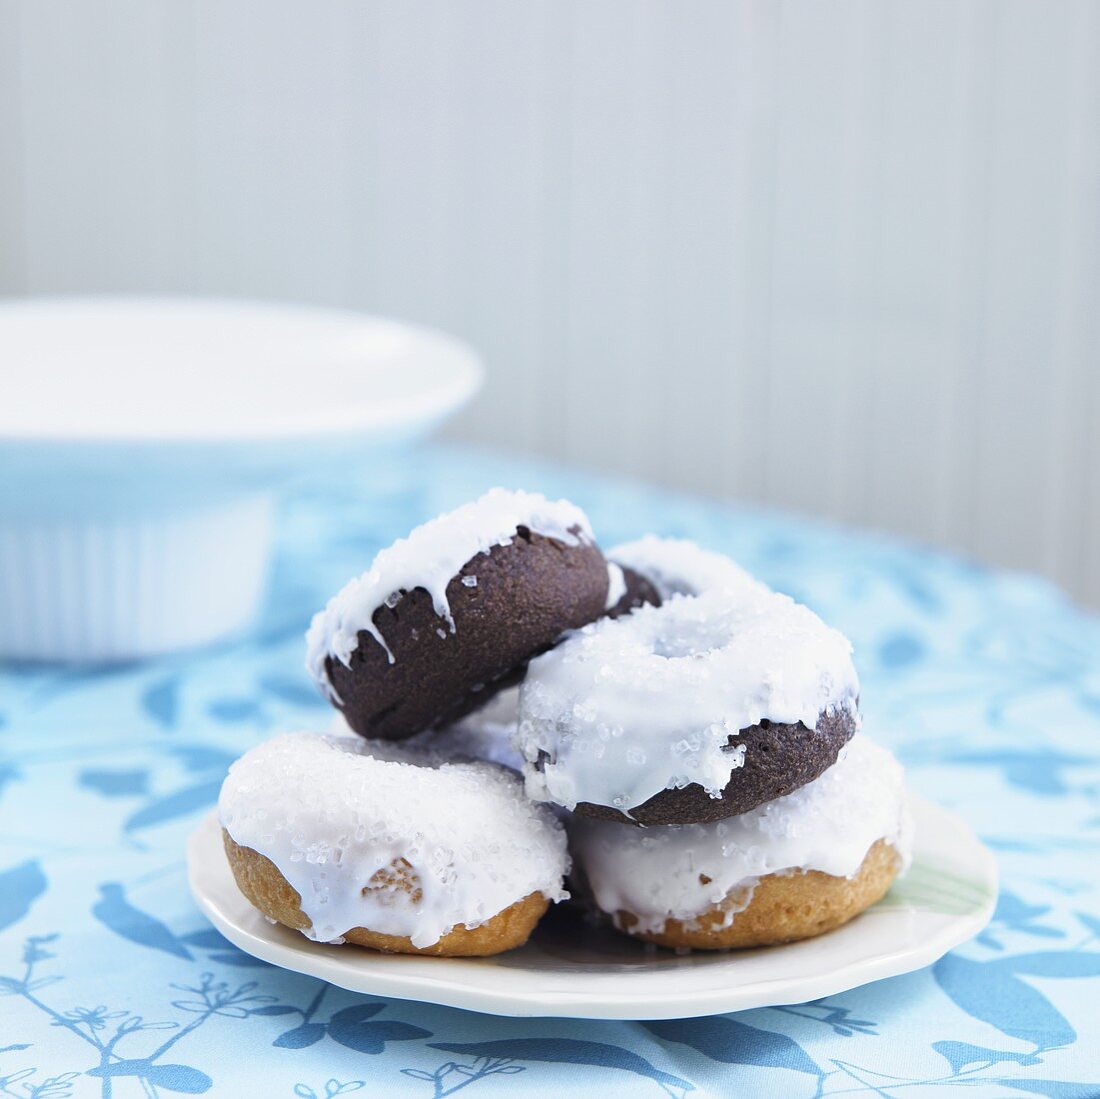 Vanille-Doughnuts und Schokoladen-Doughnuts mit Glasur